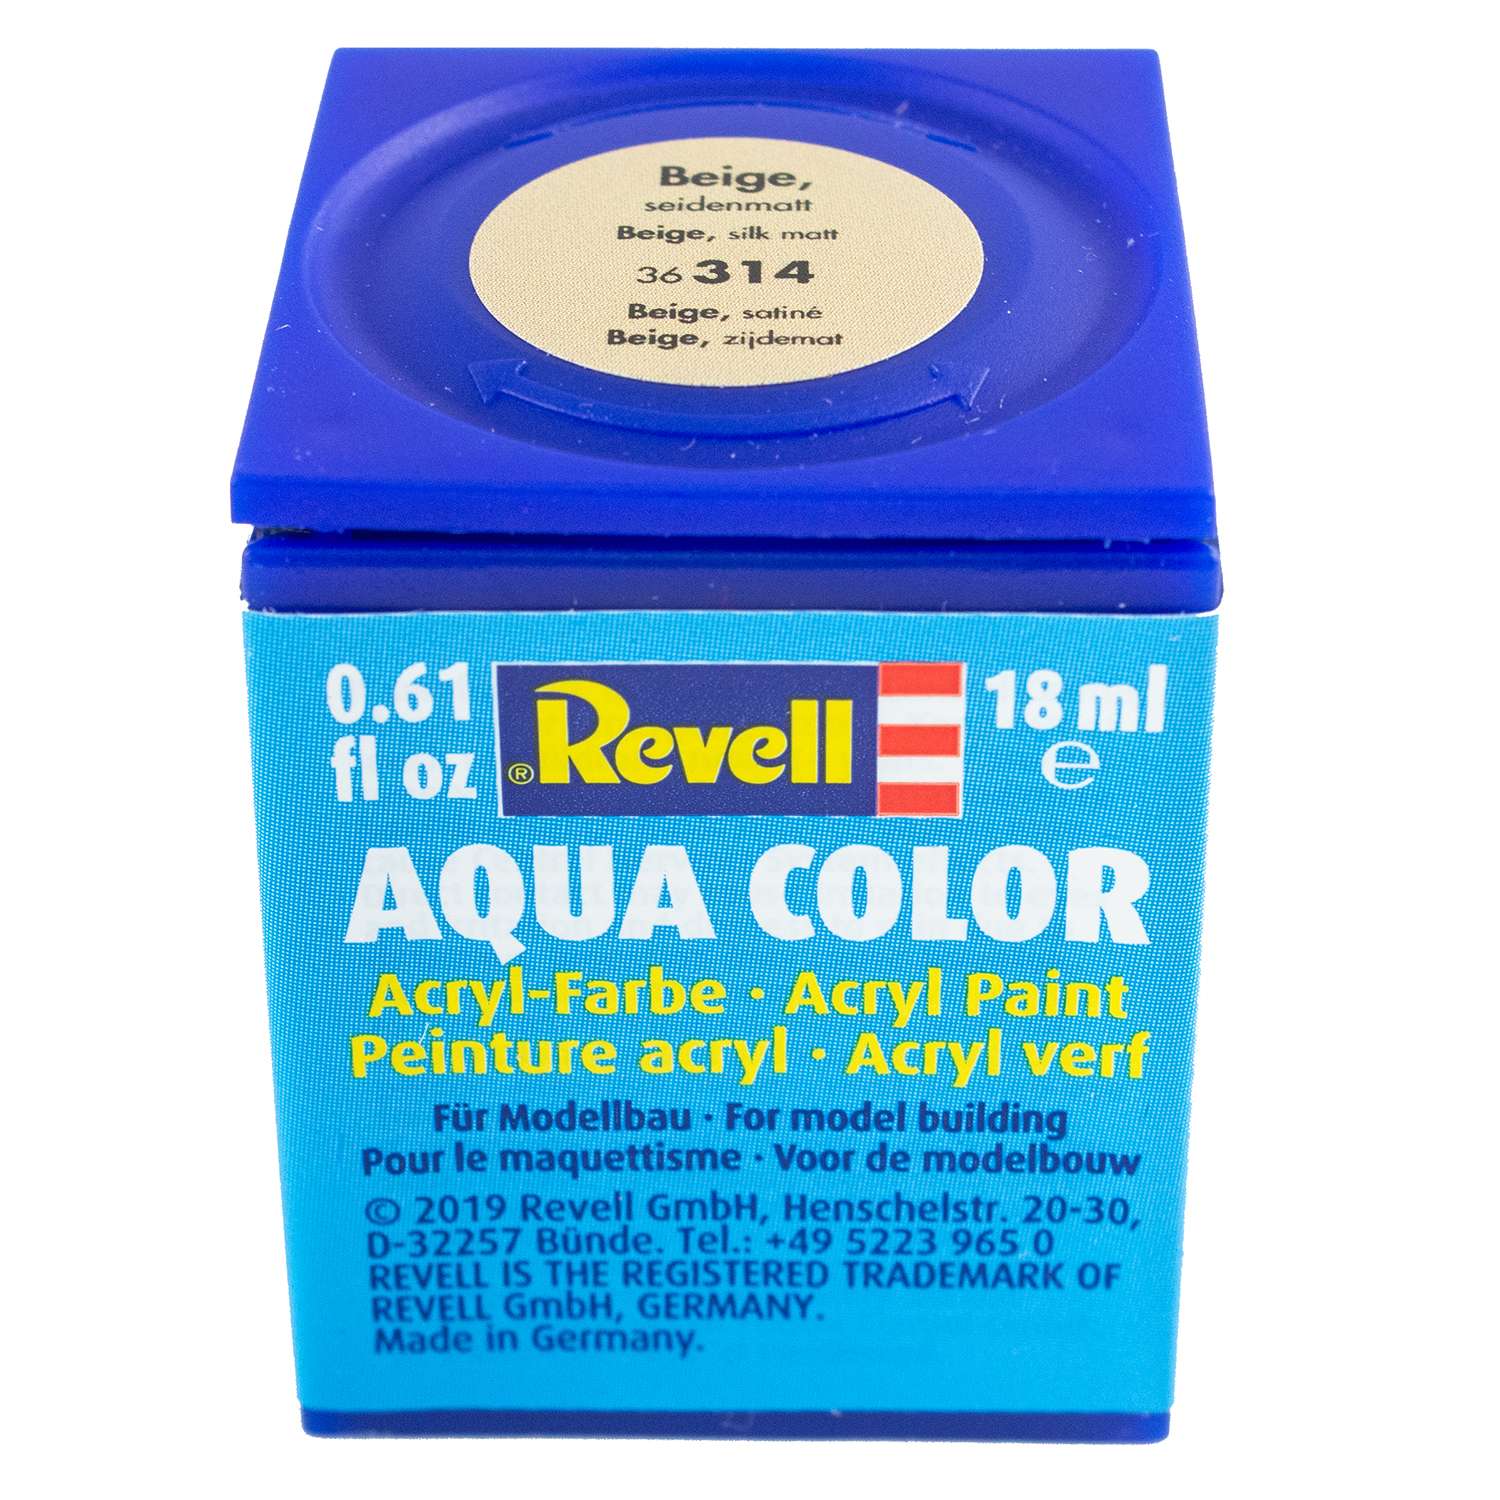 Аква-краска Revell бежевая шёлк 36314 - фото 1